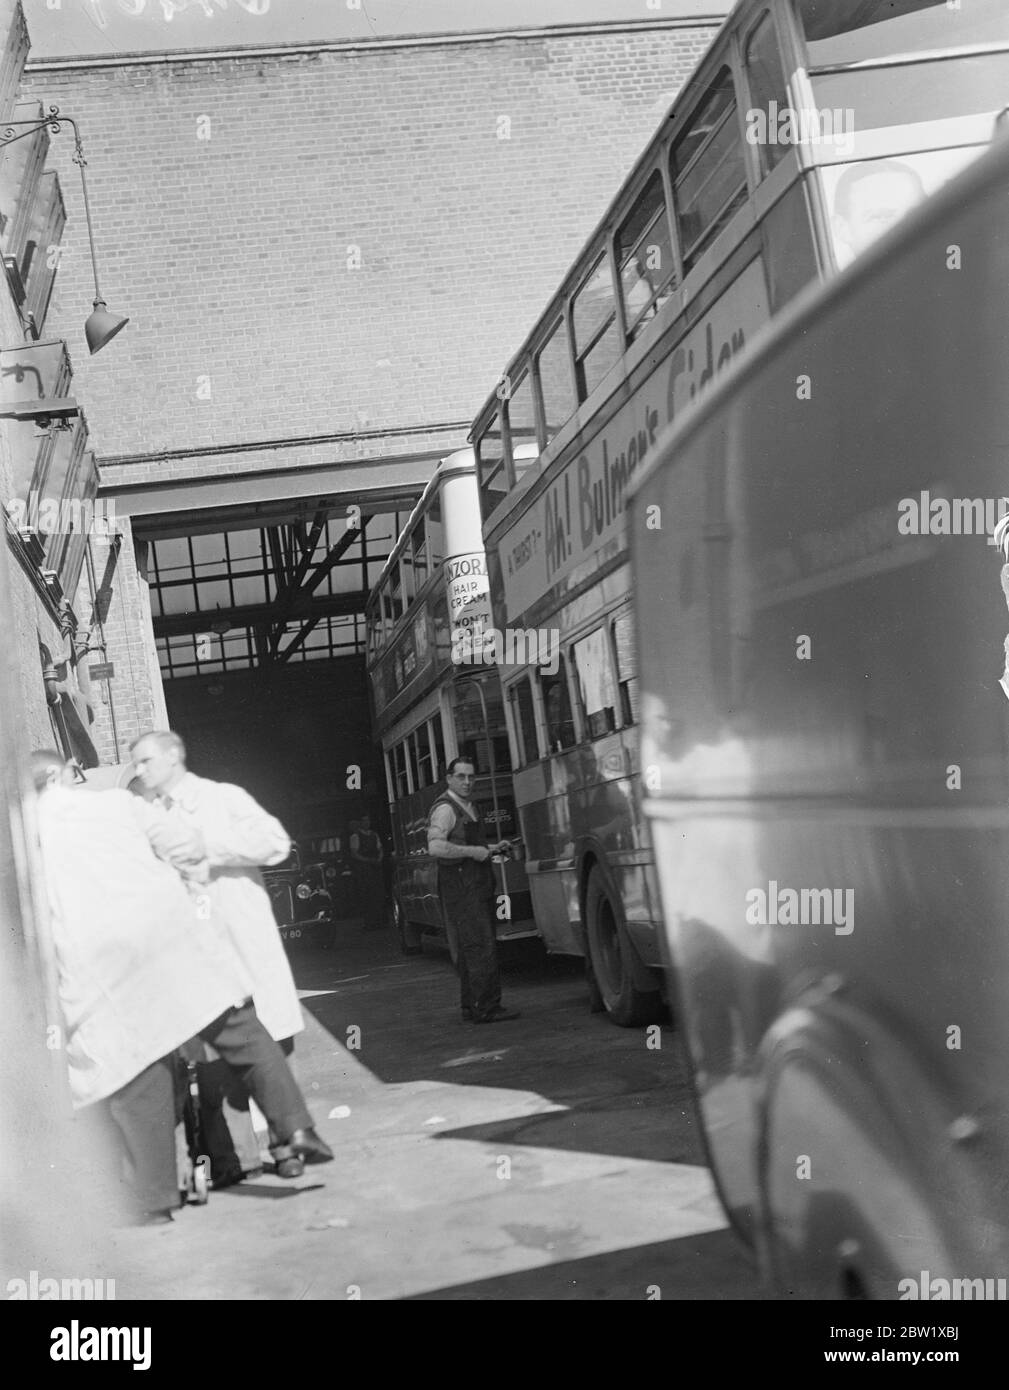 Les bus londoniens sont prêts à retourner au travail. Les milliers d'autobus de Londres, inactifs pendant un mois, sont prêts pour le retour au travail (vendredi) après la grève. Expositions de photos, vernissage d'un bus au garage de Camberwell. 27 mai 1937 Banque D'Images